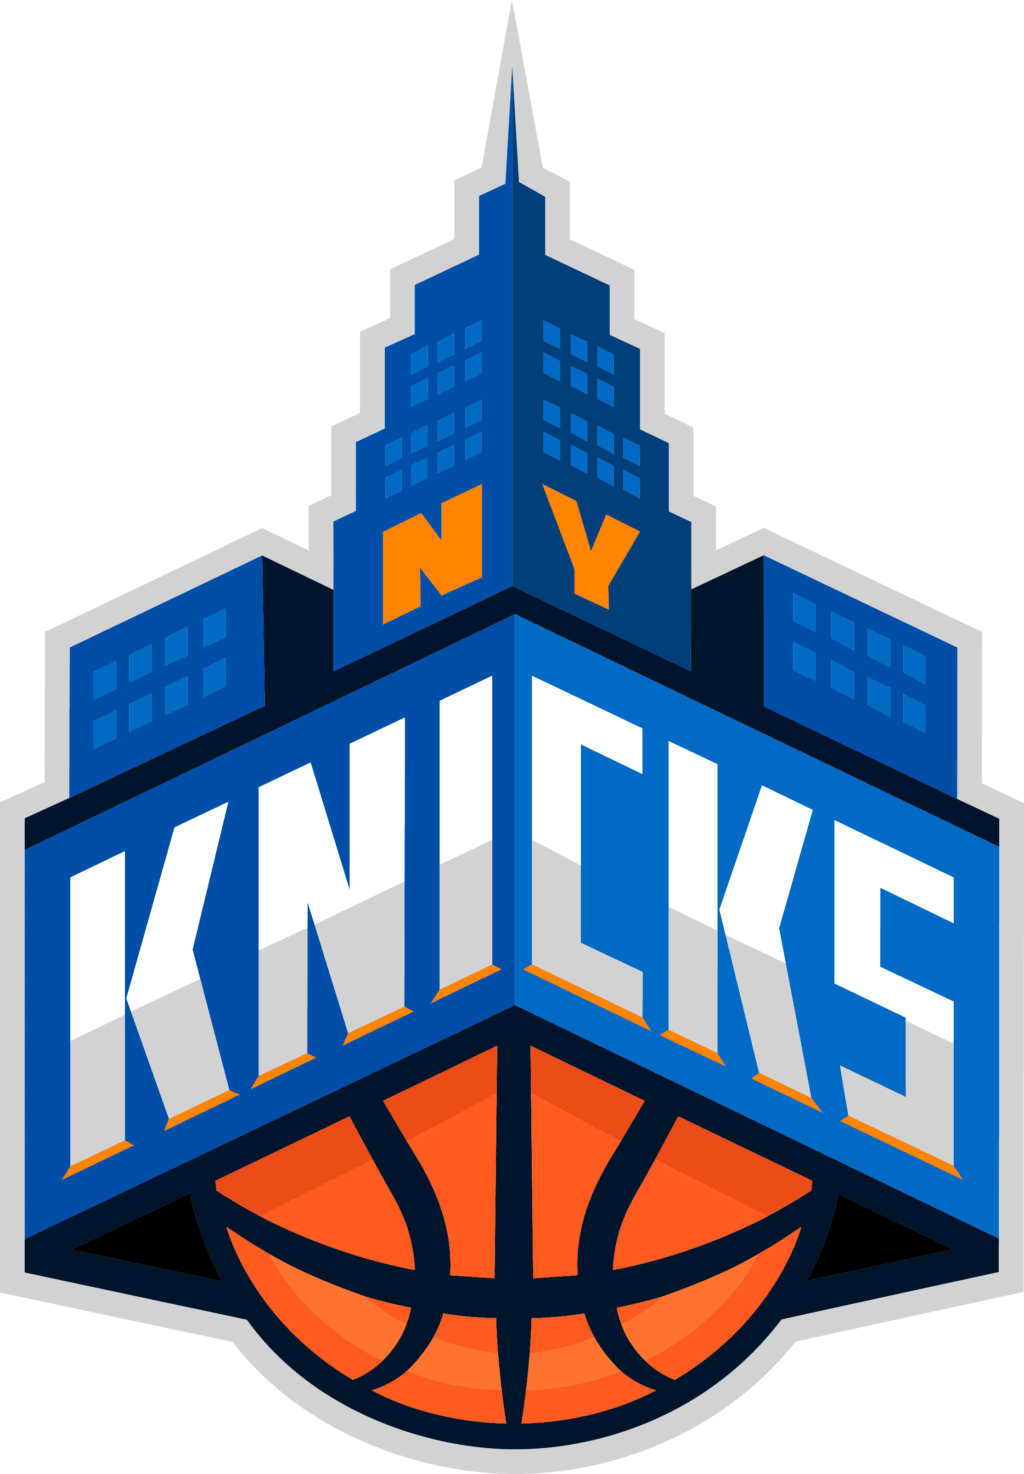 new york knicks 08 NBA New York Knicks SVG, SVG Files For Silhouette, New York Knicks Files For Cricut, New York Knicks SVG, DXF, EPS, PNG Instant Download. New York Knicks SVG, SVG Files For Silhouette, New York Knicks Files For Cricut, New York Knicks SVG, DXF, EPS, PNG Instant Download.